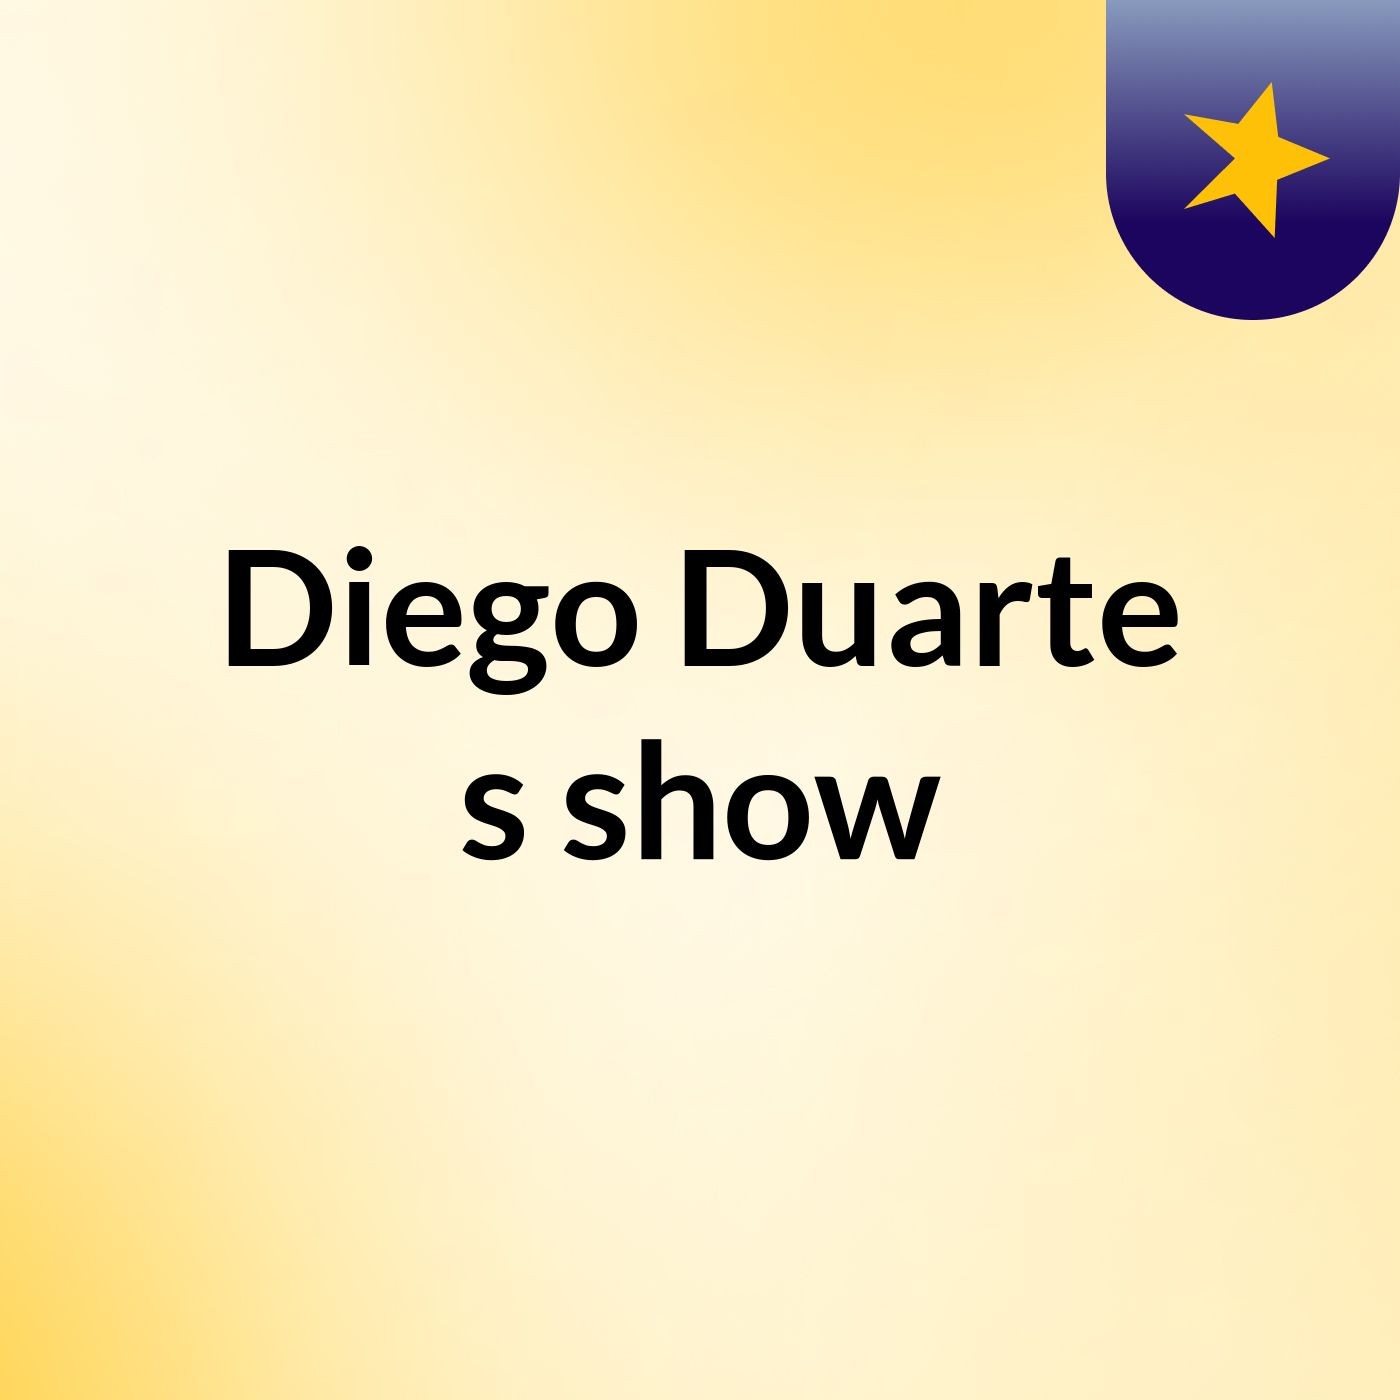 Diego Duarte's show